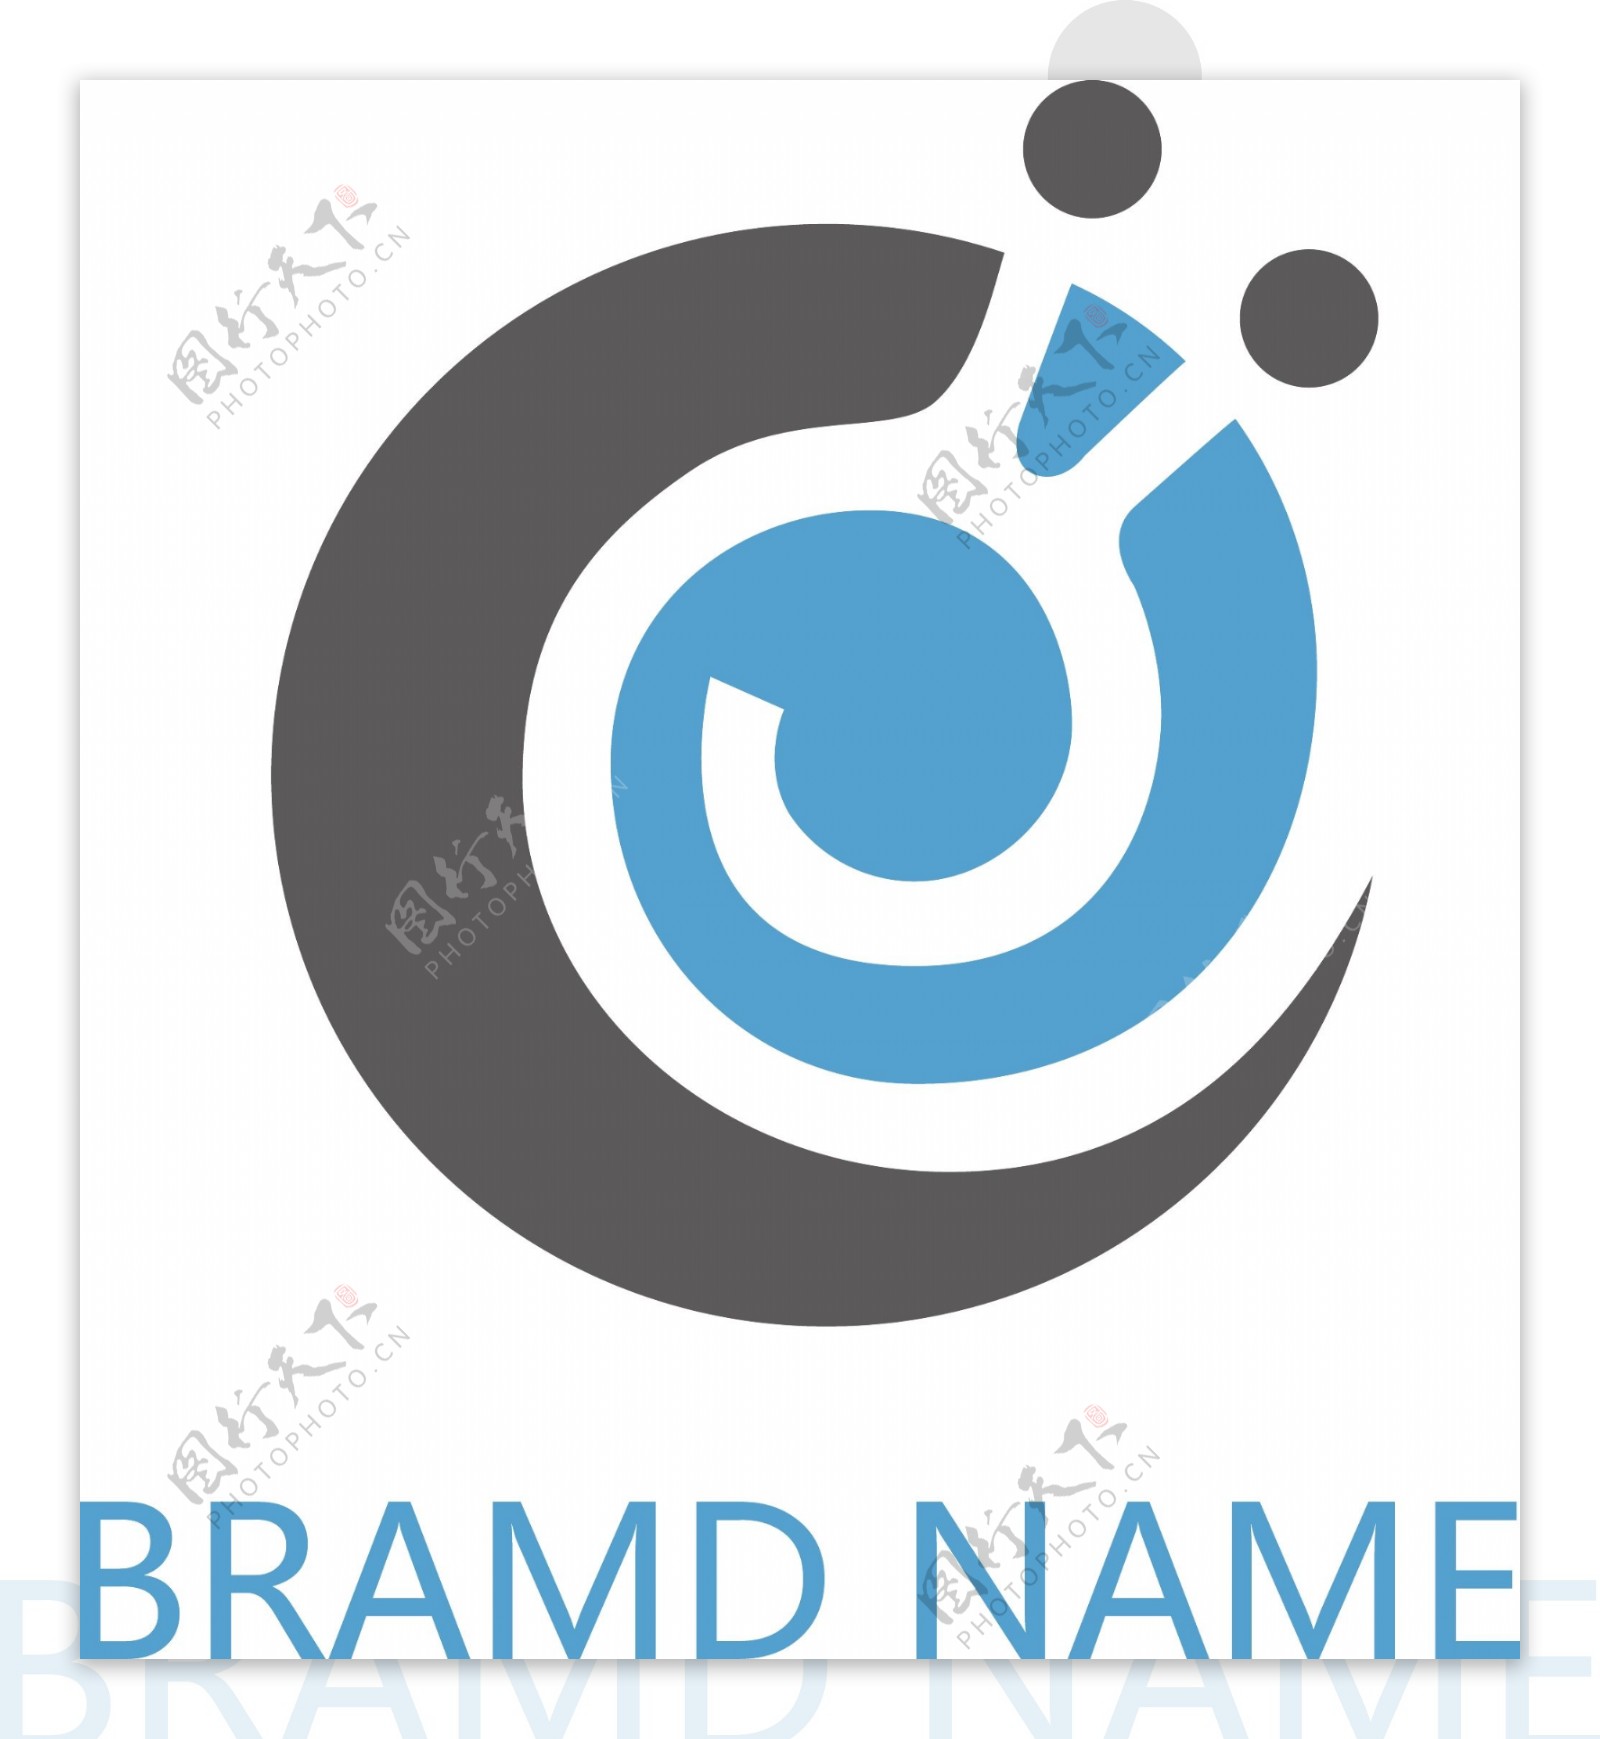 蜗牛科技企业logo